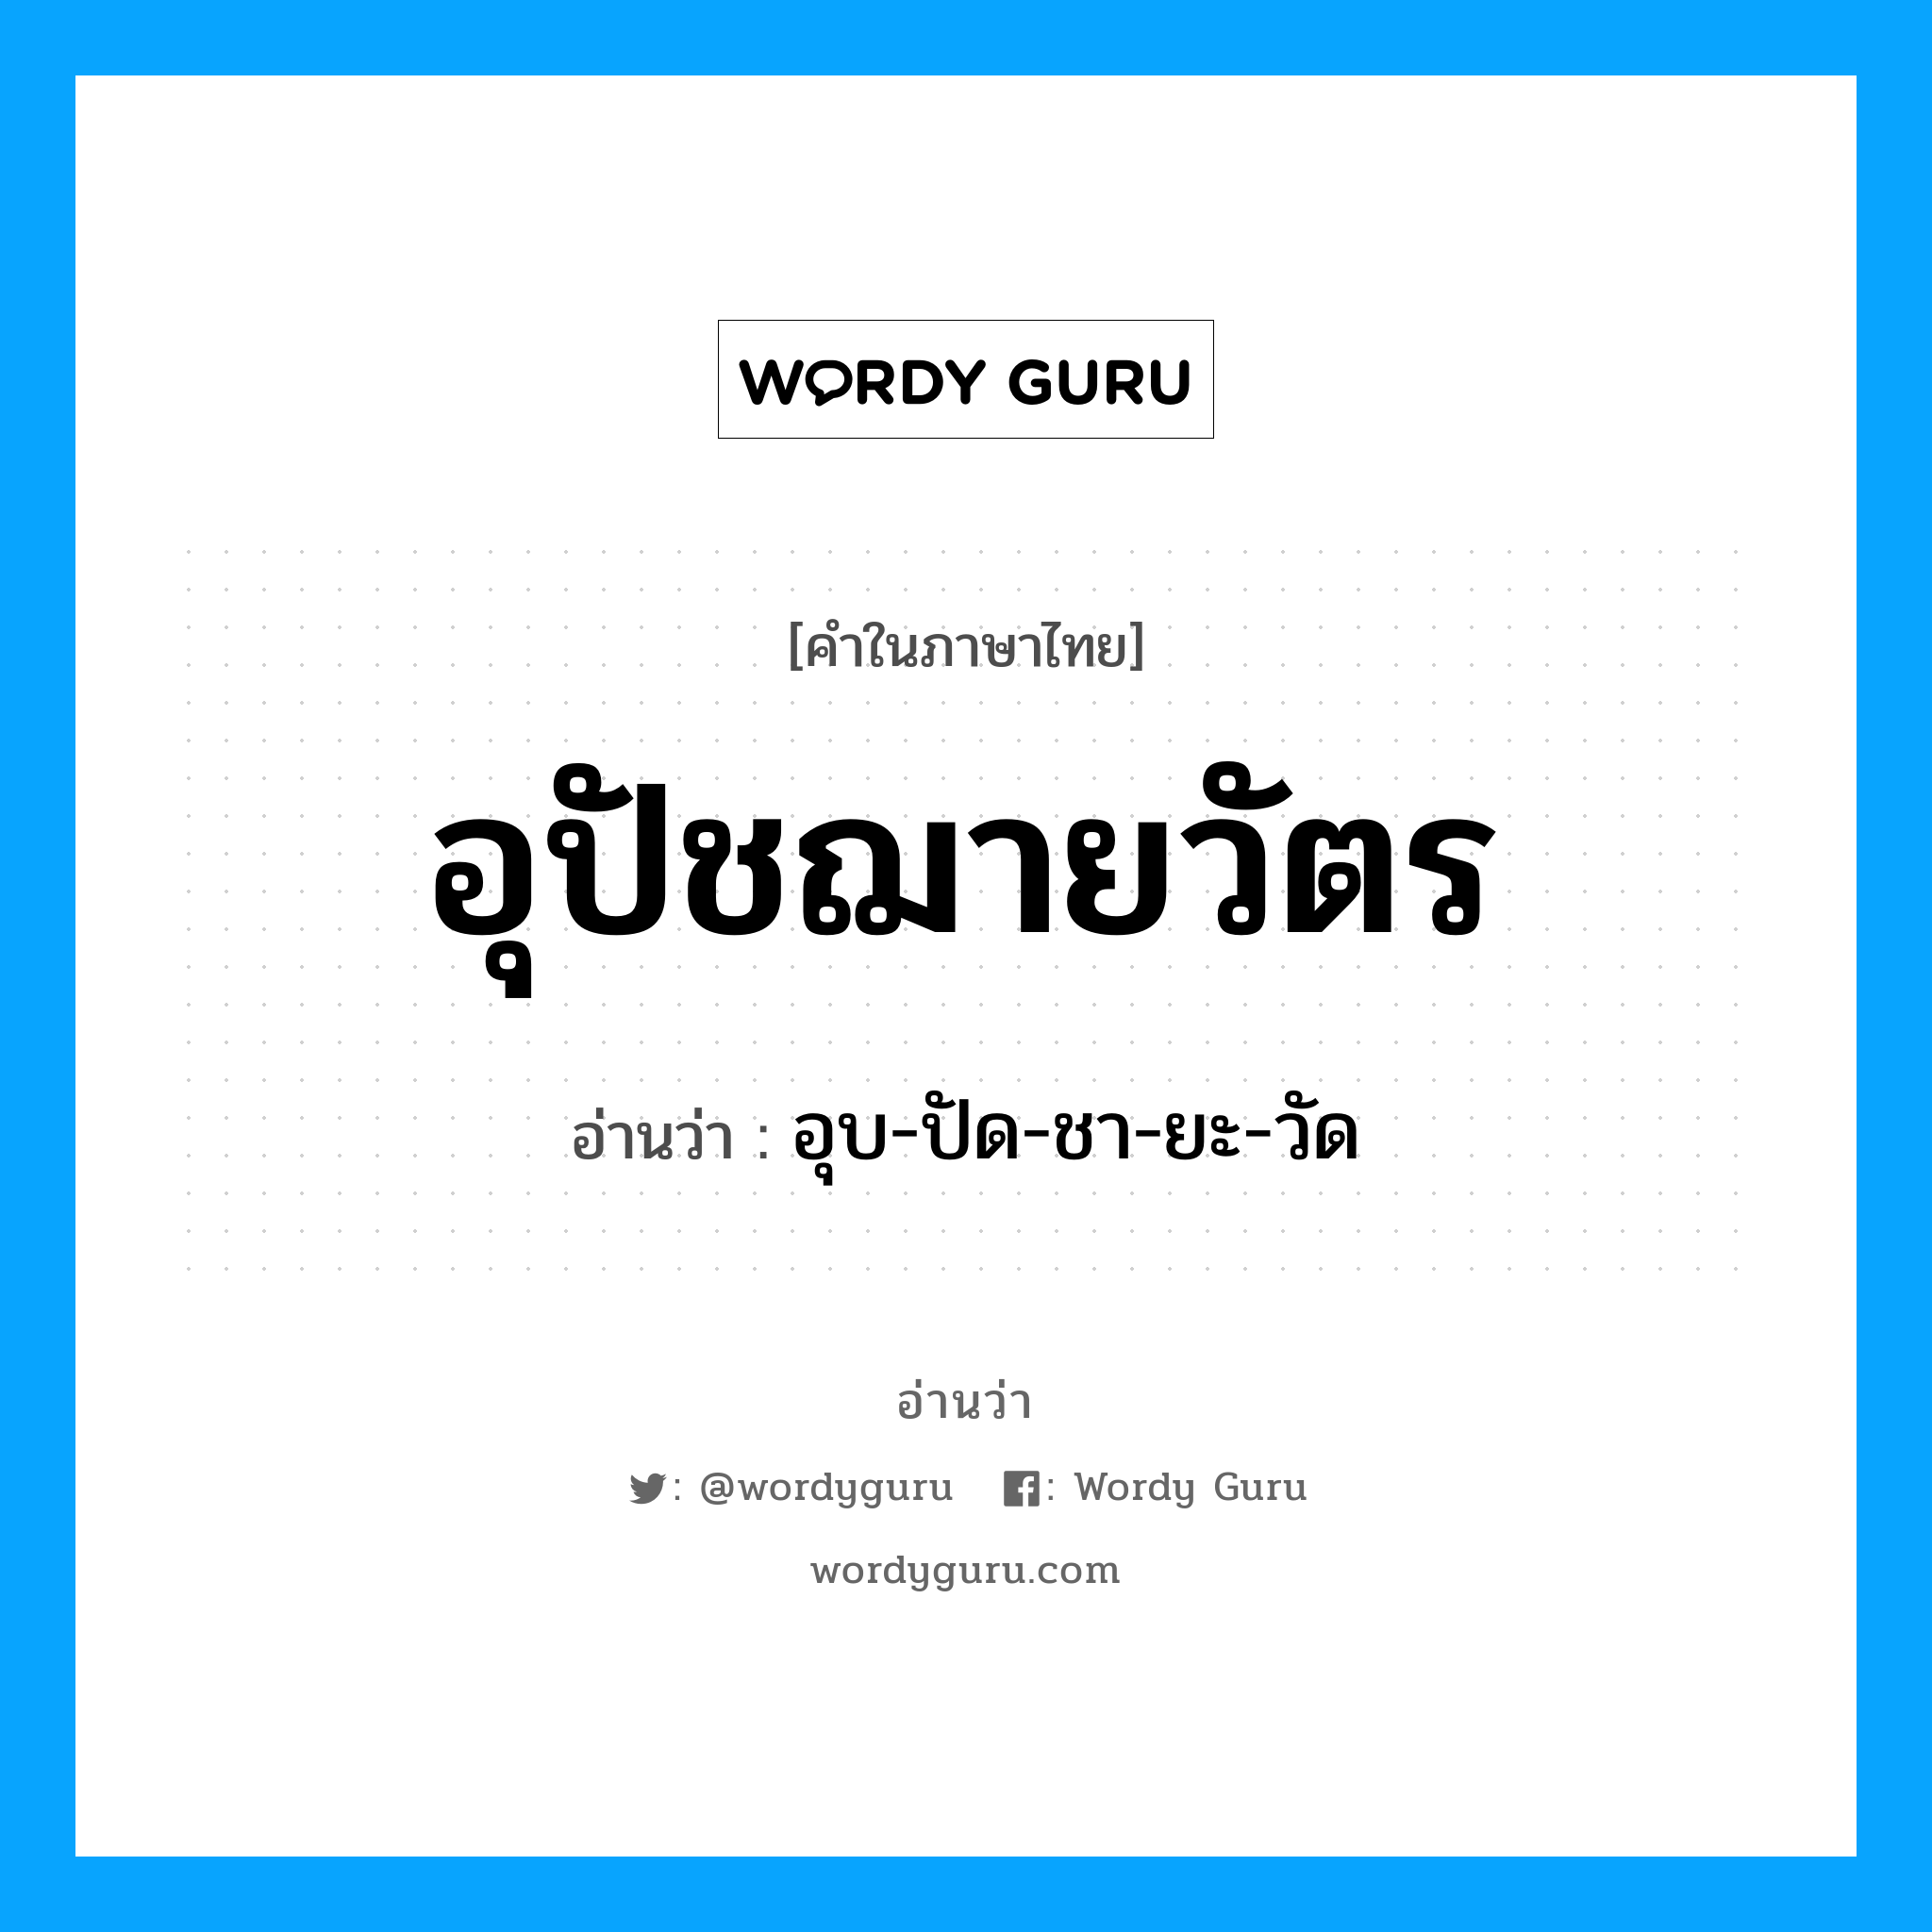 อุบ-ปัด-ชา-ยะ-วัด เป็นคำอ่านของคำไหน?, คำในภาษาไทย อุบ-ปัด-ชา-ยะ-วัด อ่านว่า อุปัชฌายวัตร